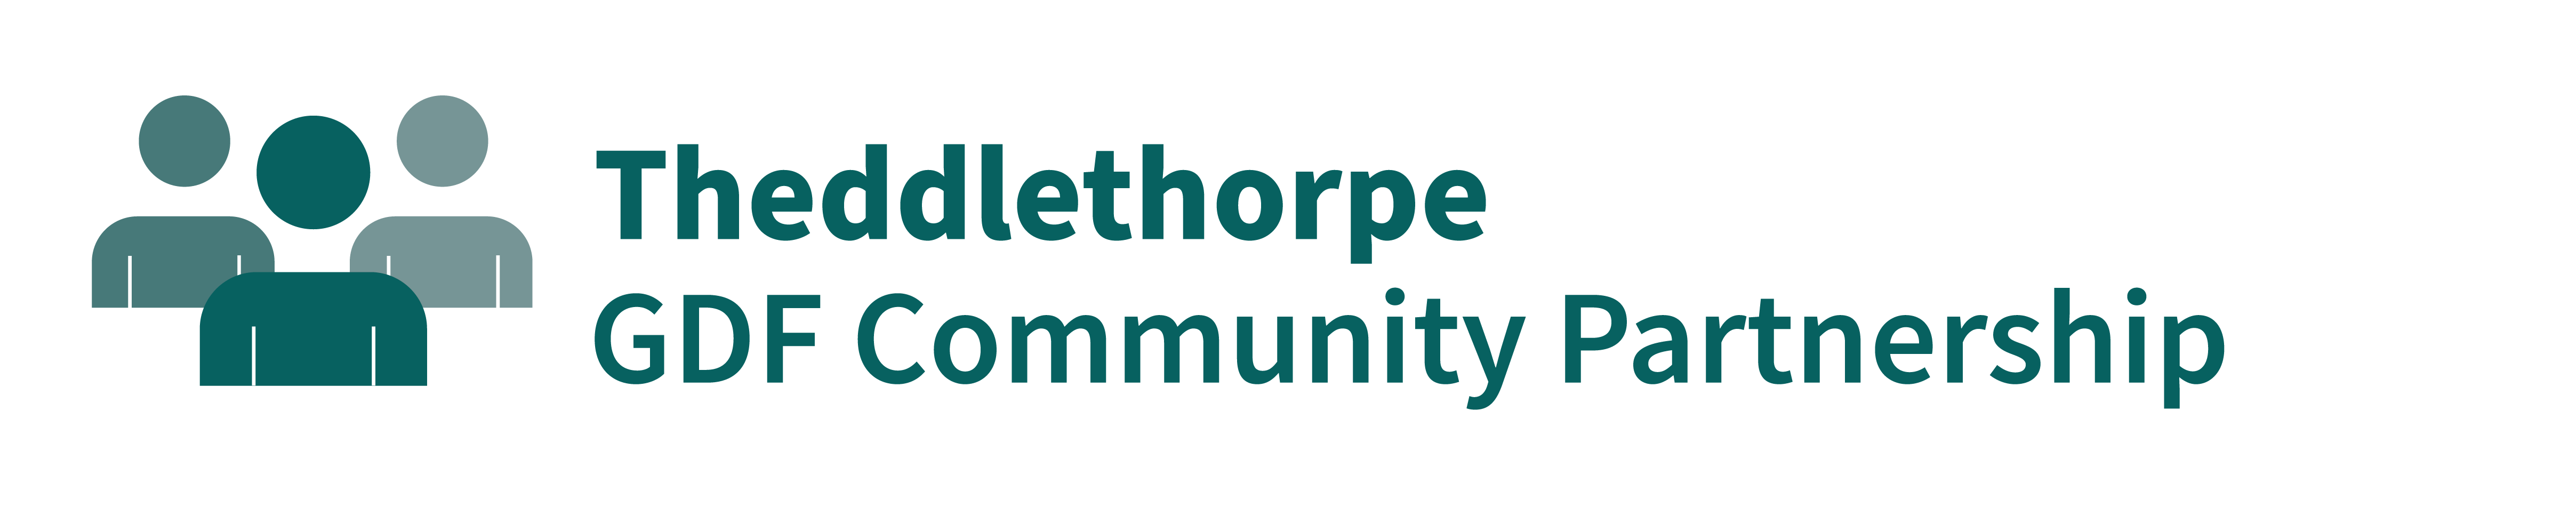 Theddlethorpe Partnership logo